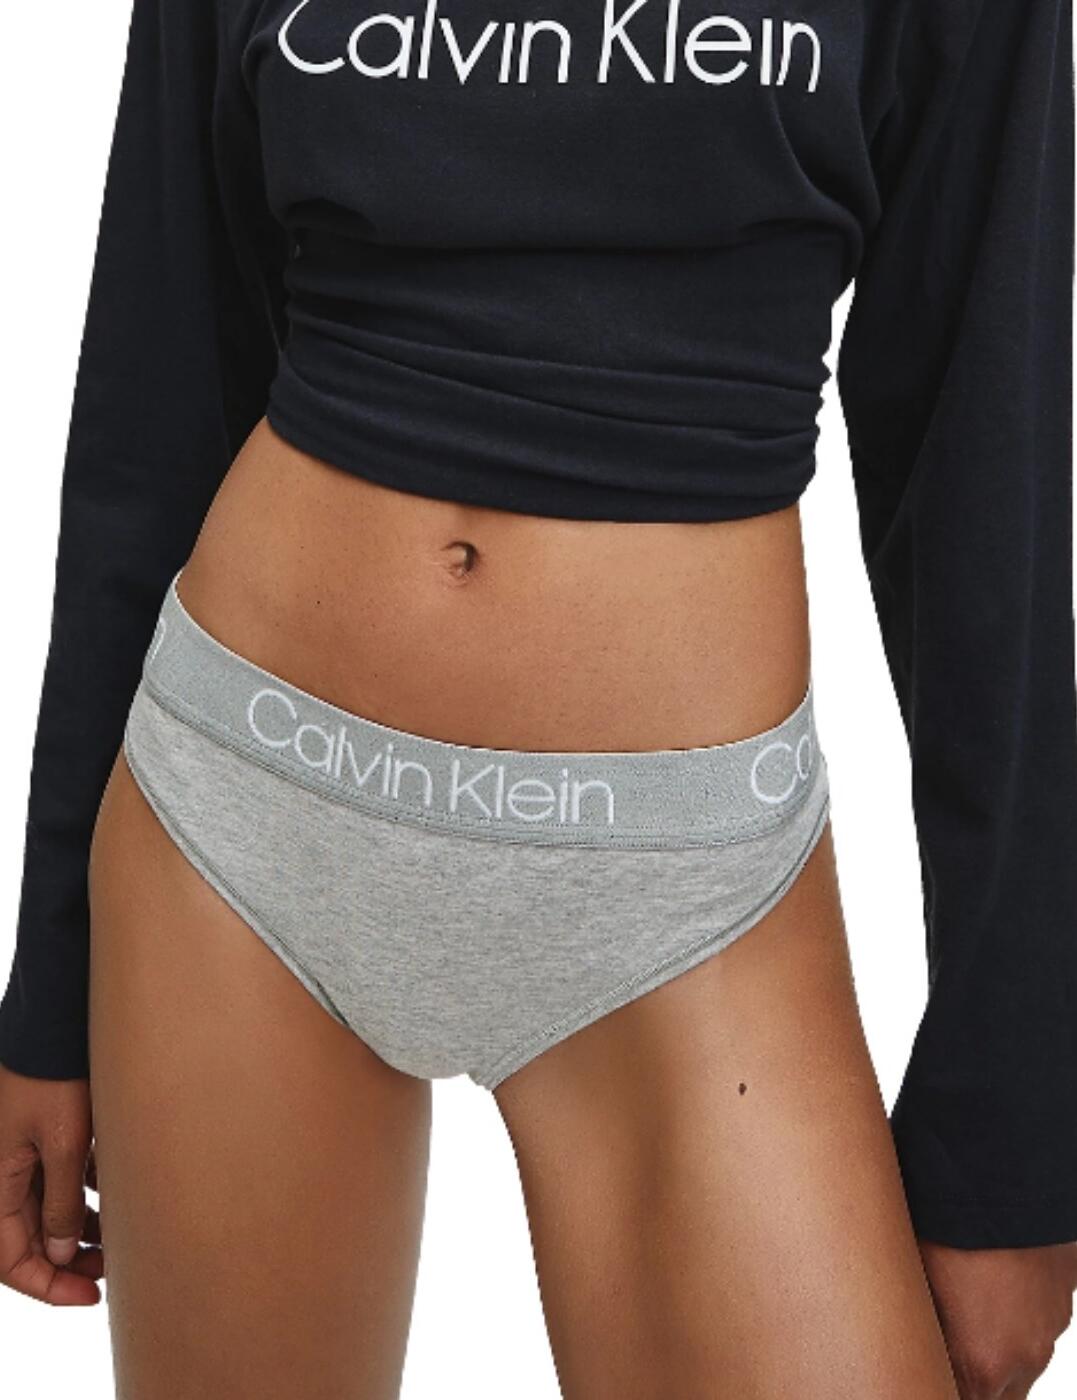 CALVIN KLEIN - WOMEN'S UNDERWEAR Calvin Klein BODY - Thong